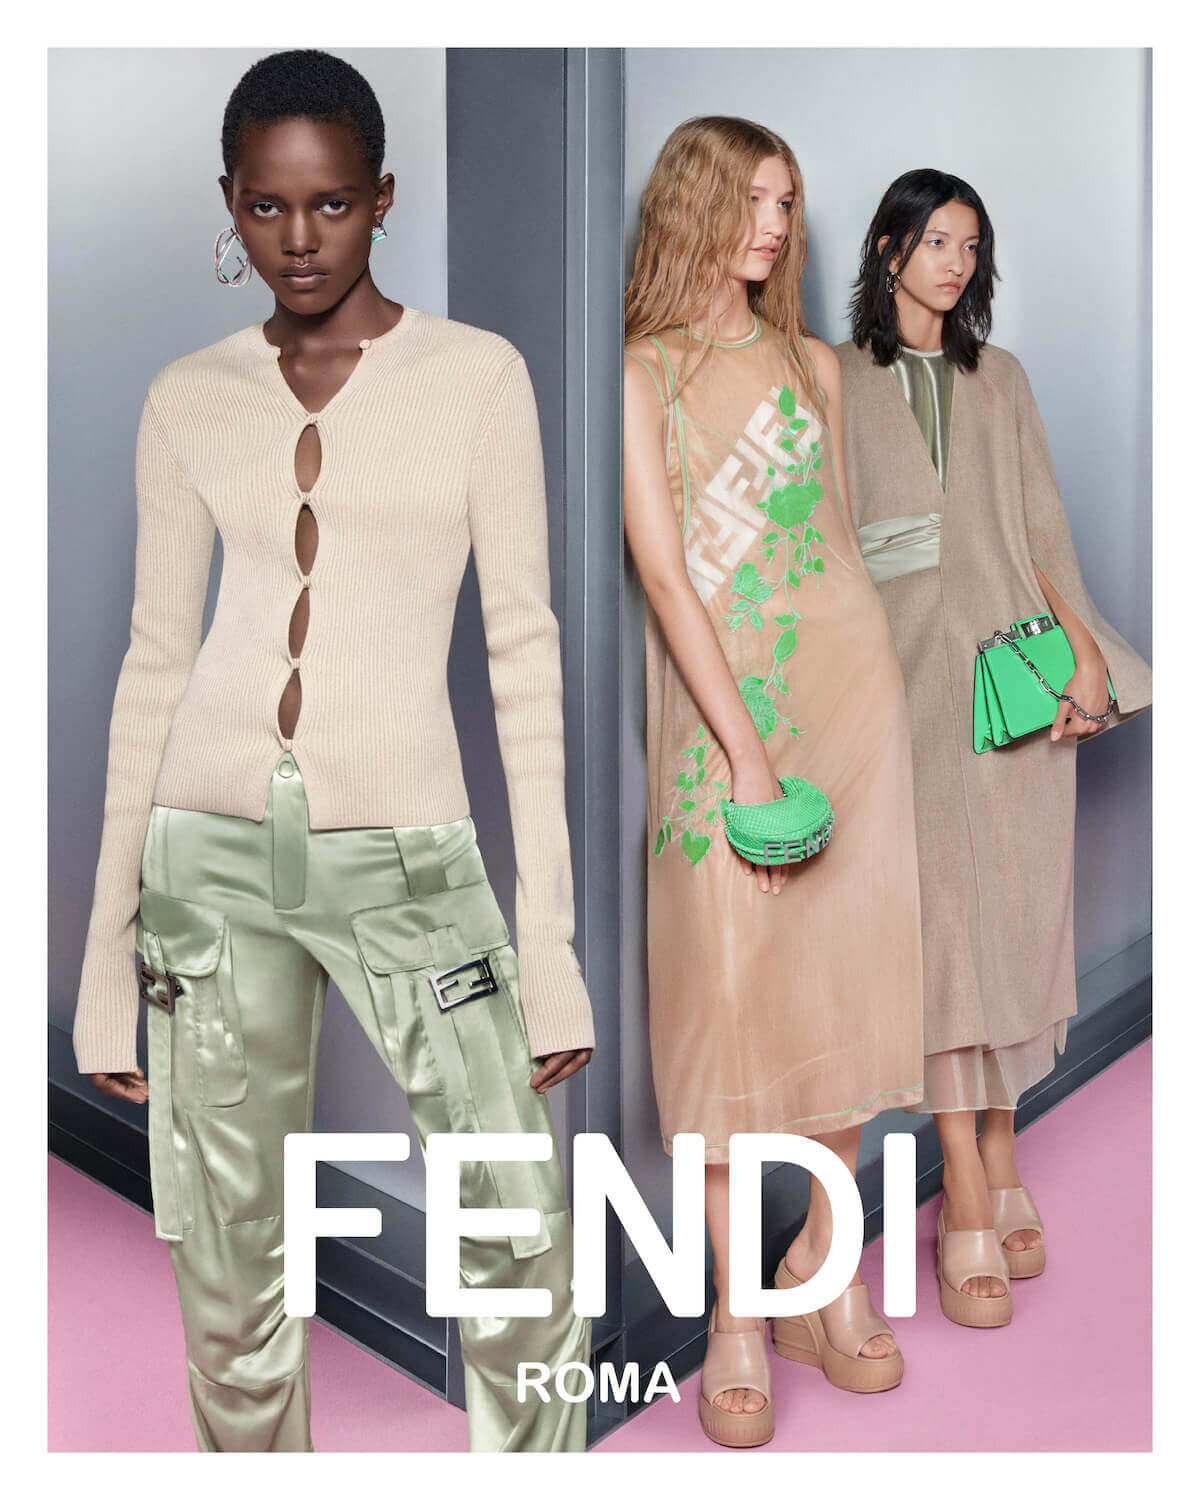 Fendi Opens New Flagships in Tokyo, Seoul – WWD